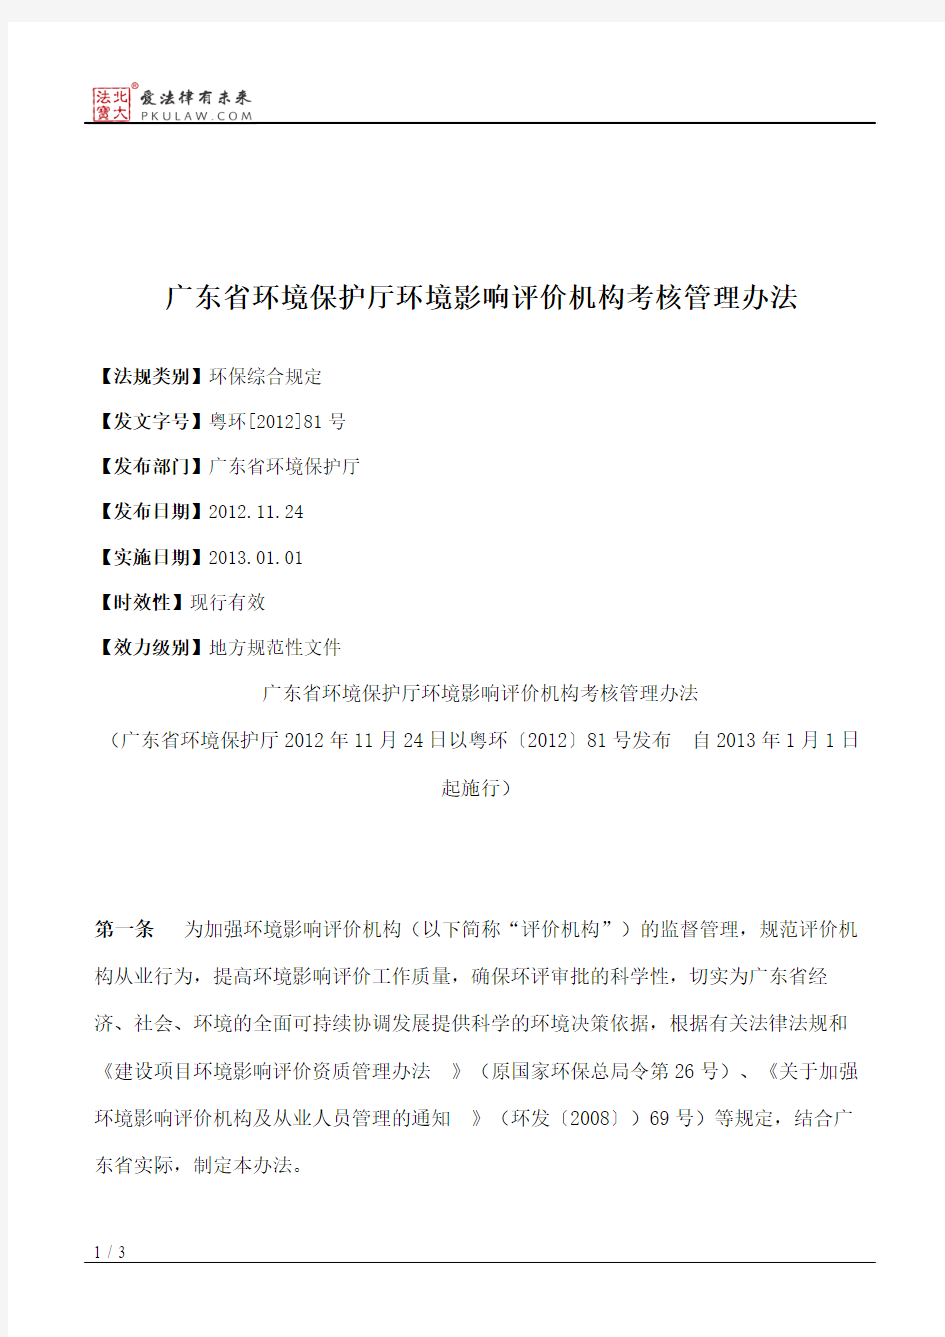 广东省环境保护厅环境影响评价机构考核管理办法